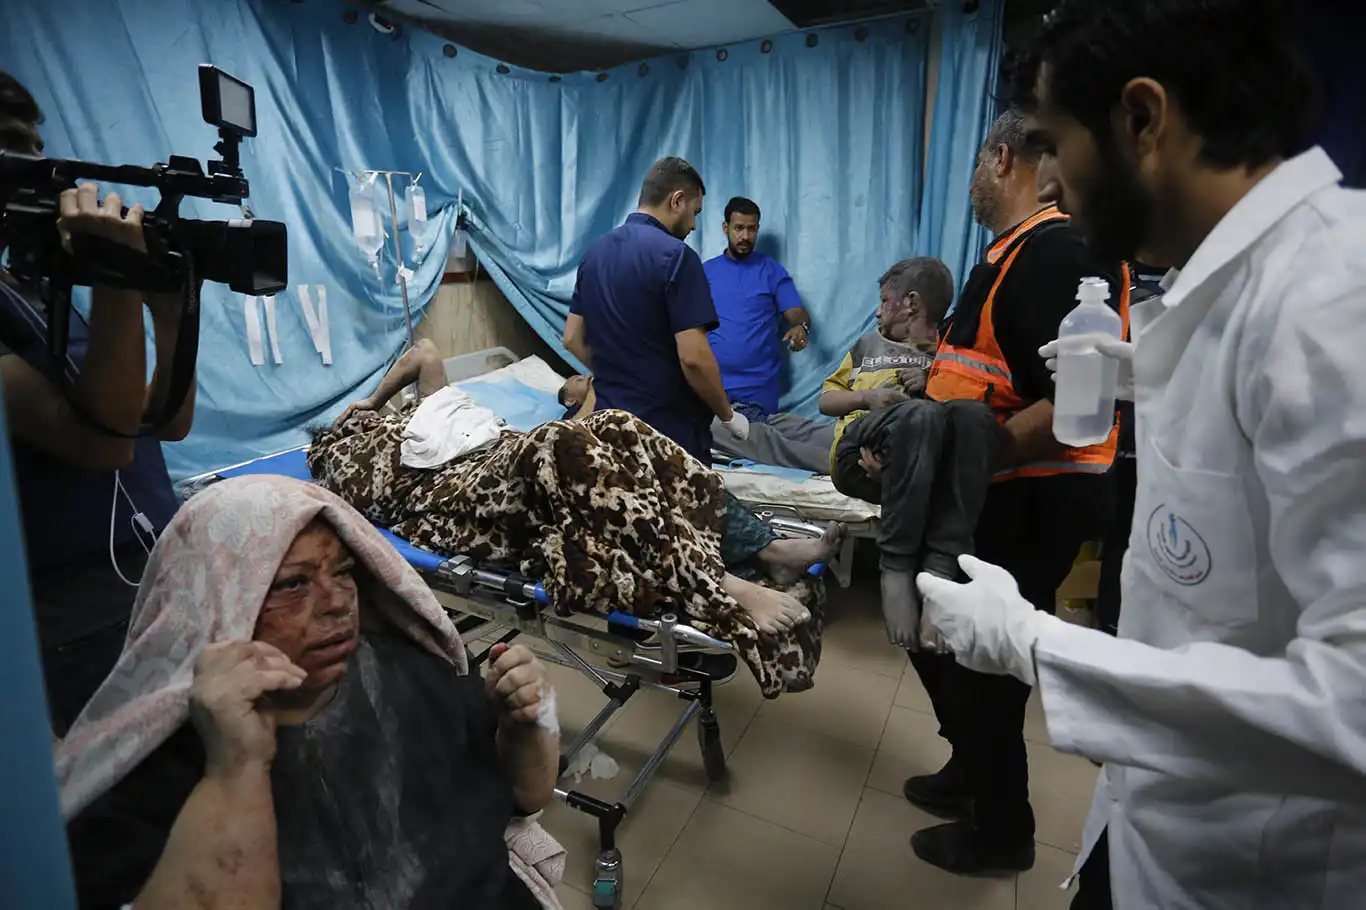 "siyonist işgal rejiminin Gazze'ye ilacın girişini engellemesi soykırımdır"